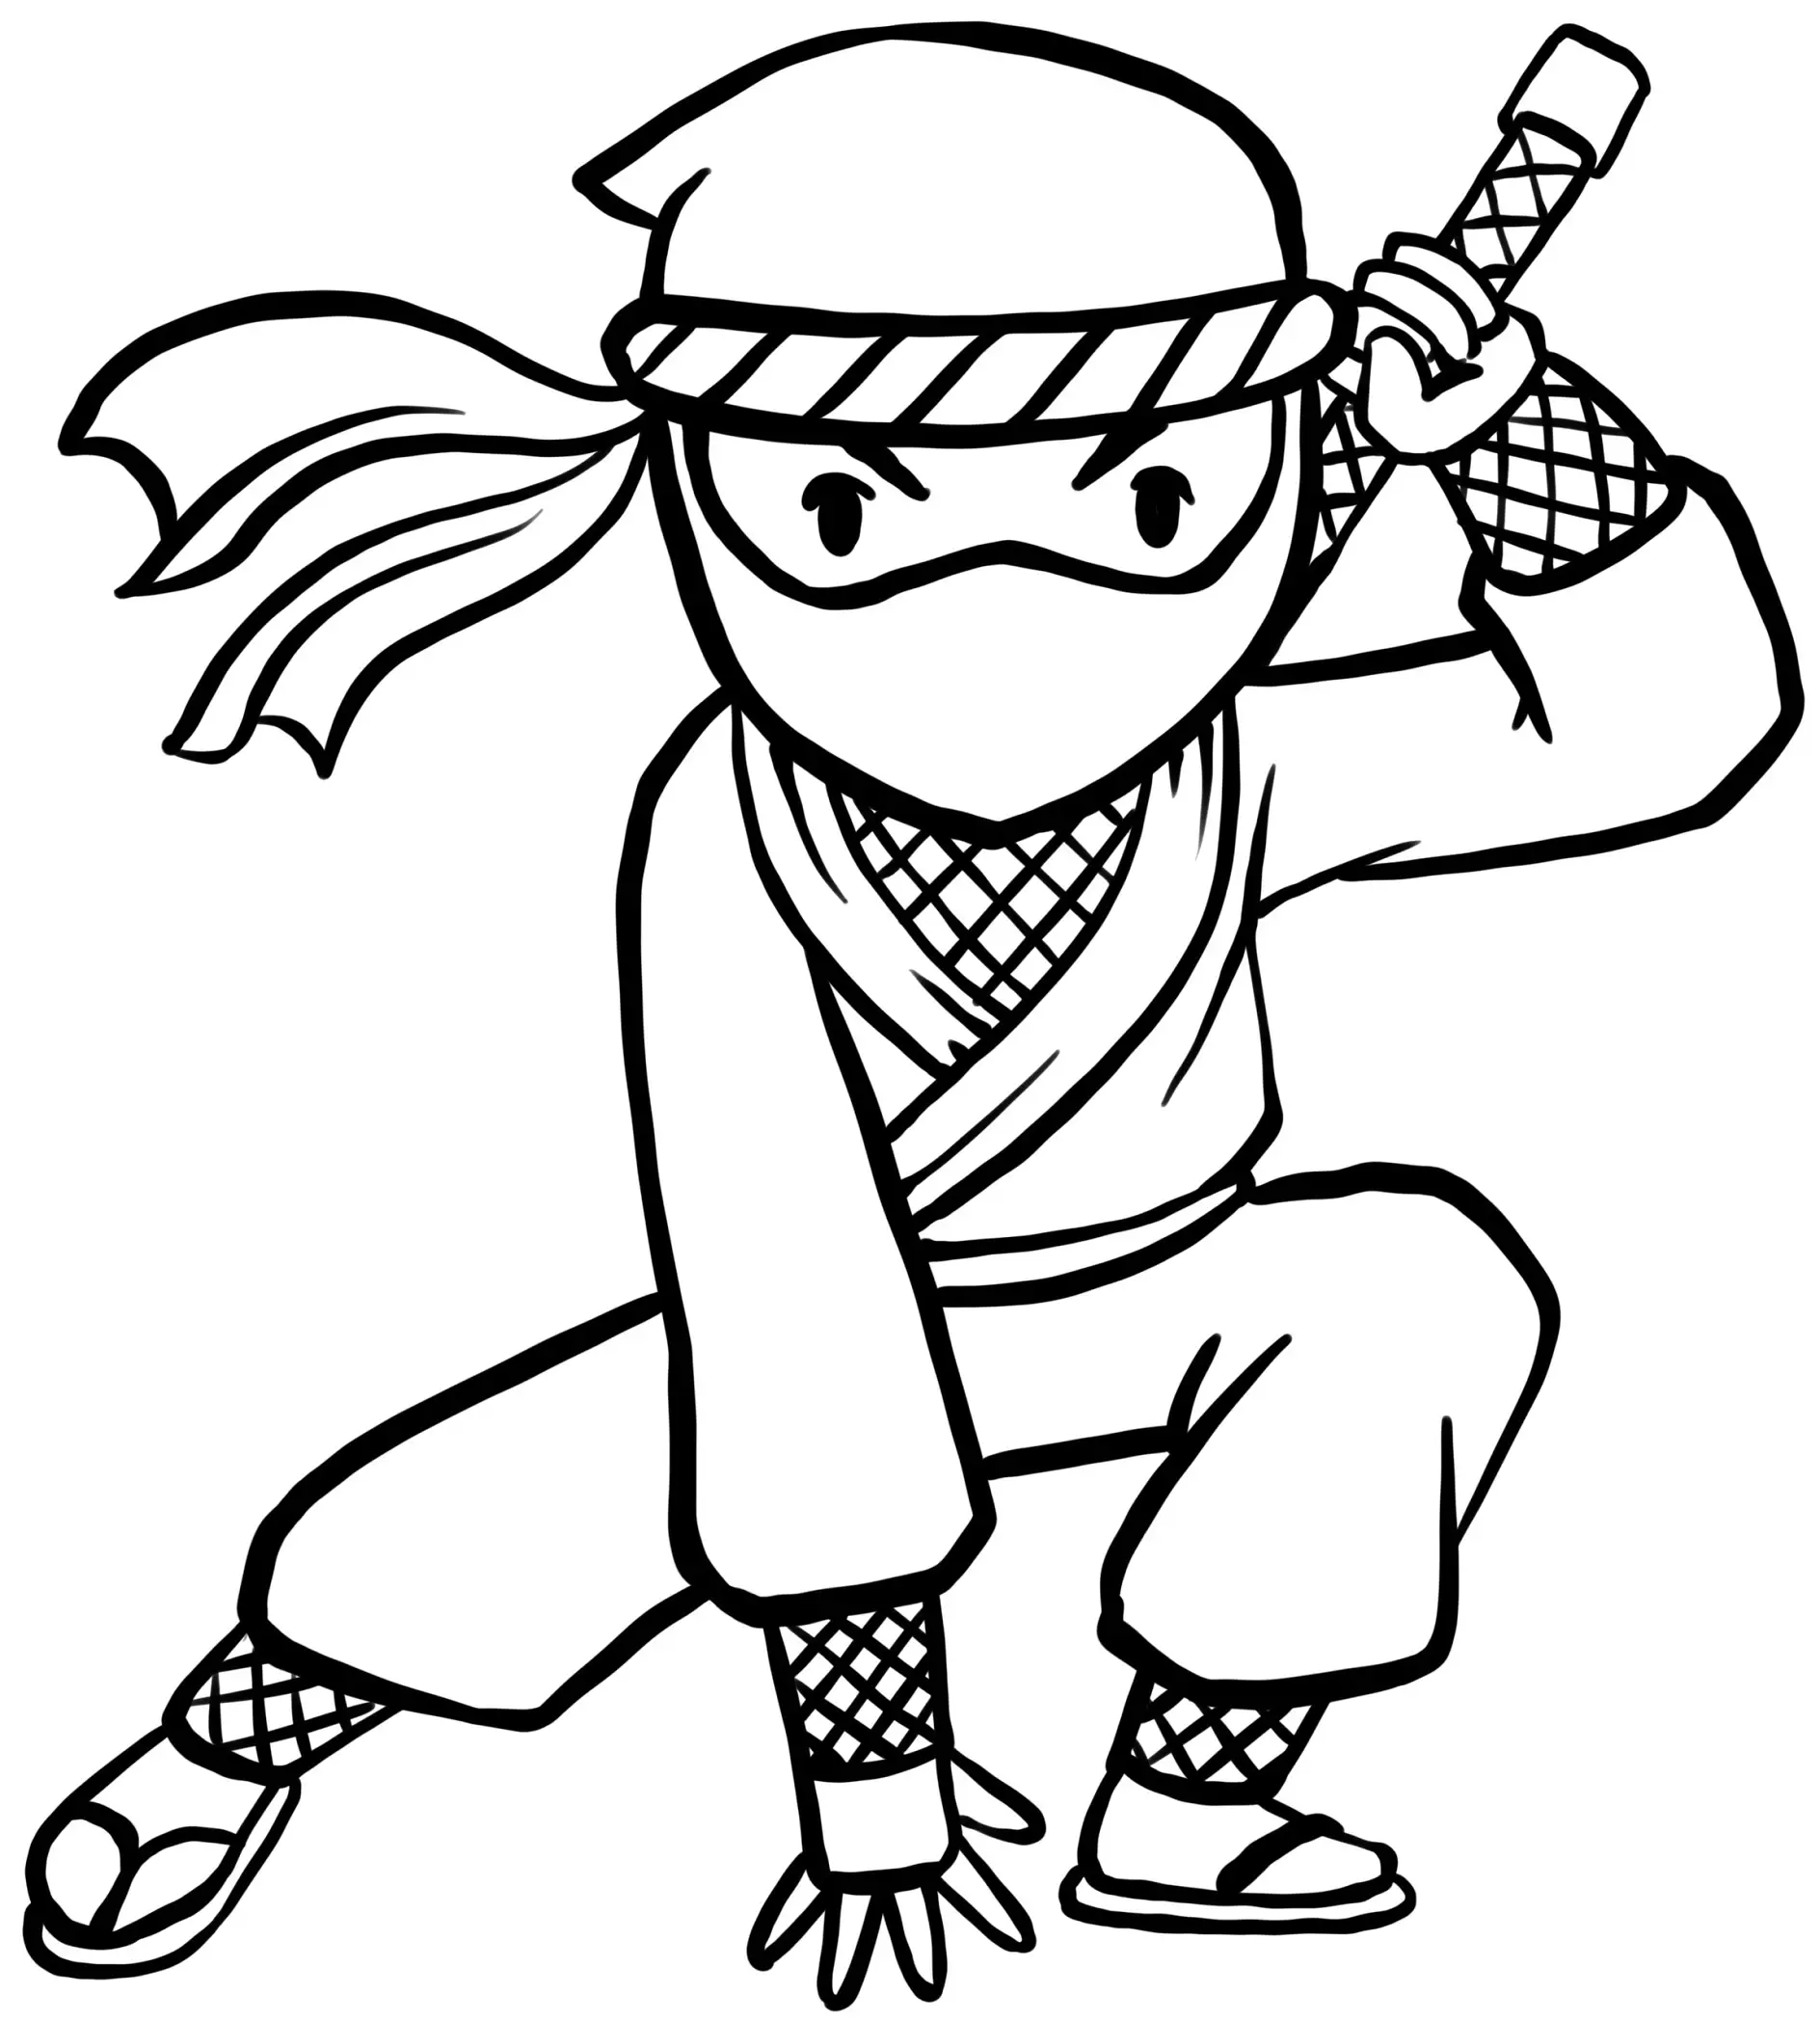 Ausmalbild Ninja in Hockstellung mit Schwert und Bandana